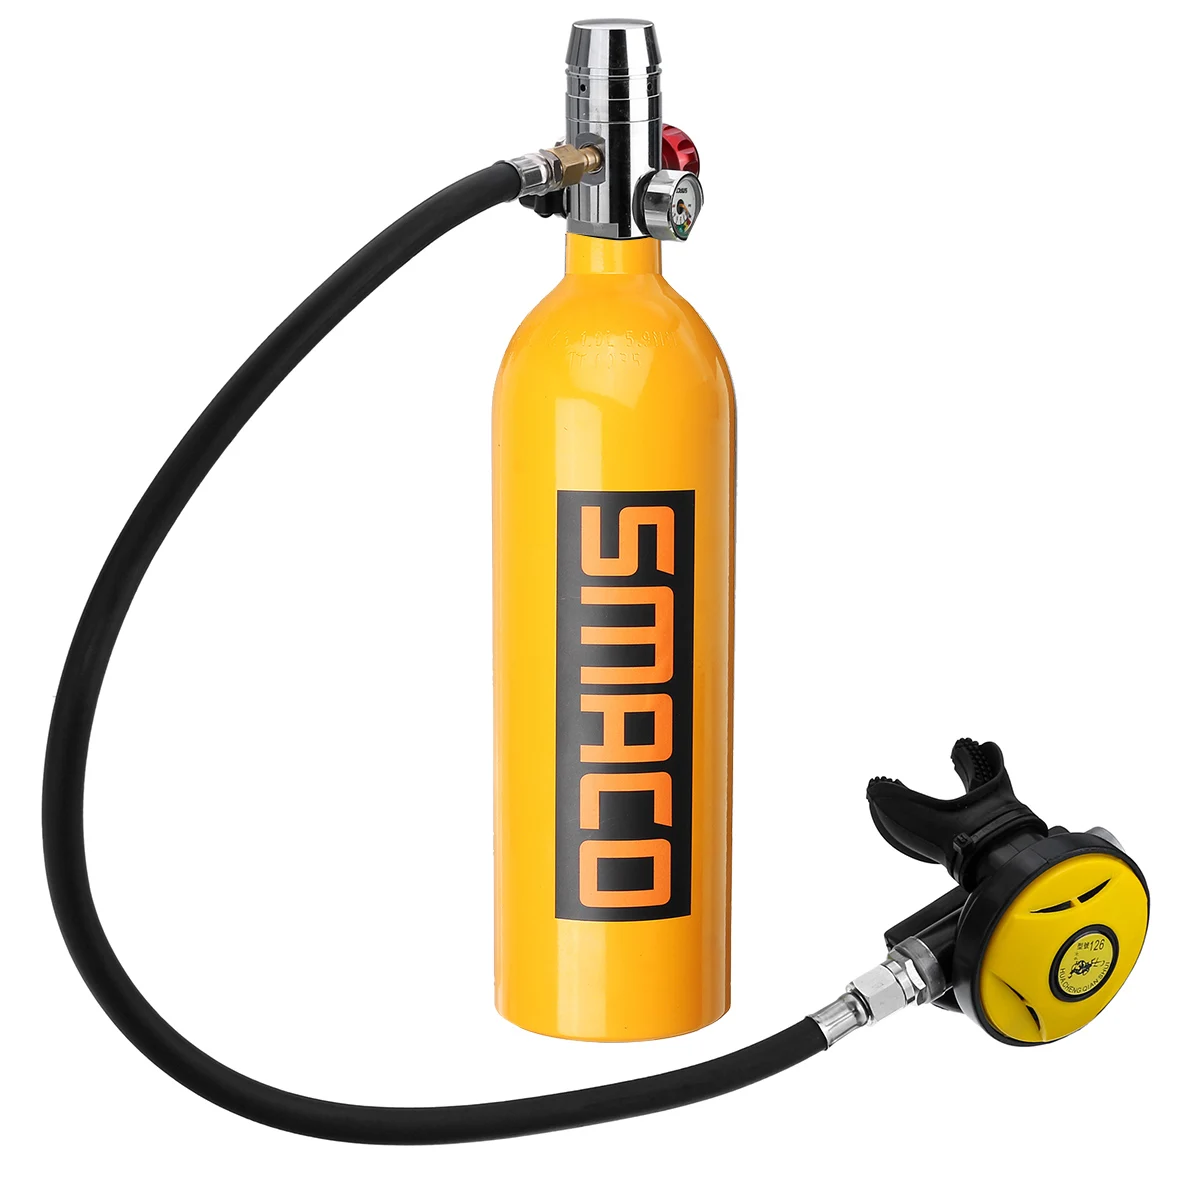 10-15 минут 1000 мл новое SMACO портативное снаряжение для дайвинга кислородный цилиндр S400 подводный респиратор Дайвинг кислородная бутылка - Цвет: Orange